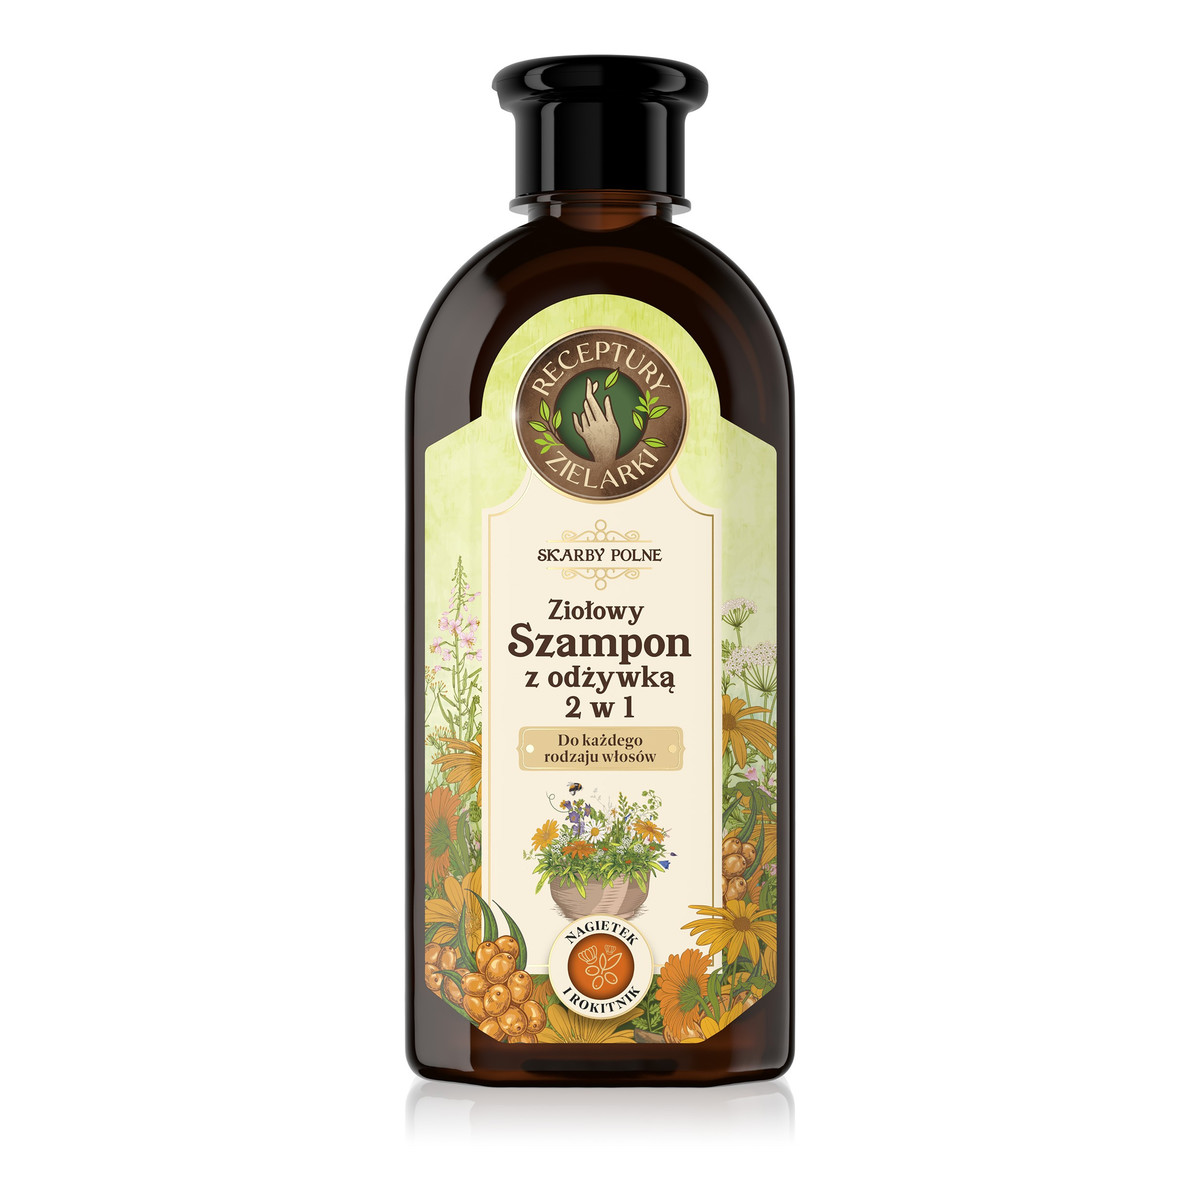 Receptury Zielarki Skarby Polne ziołowy szampon z odżywką 2w1 do każdego rodzaju włosów 350ml